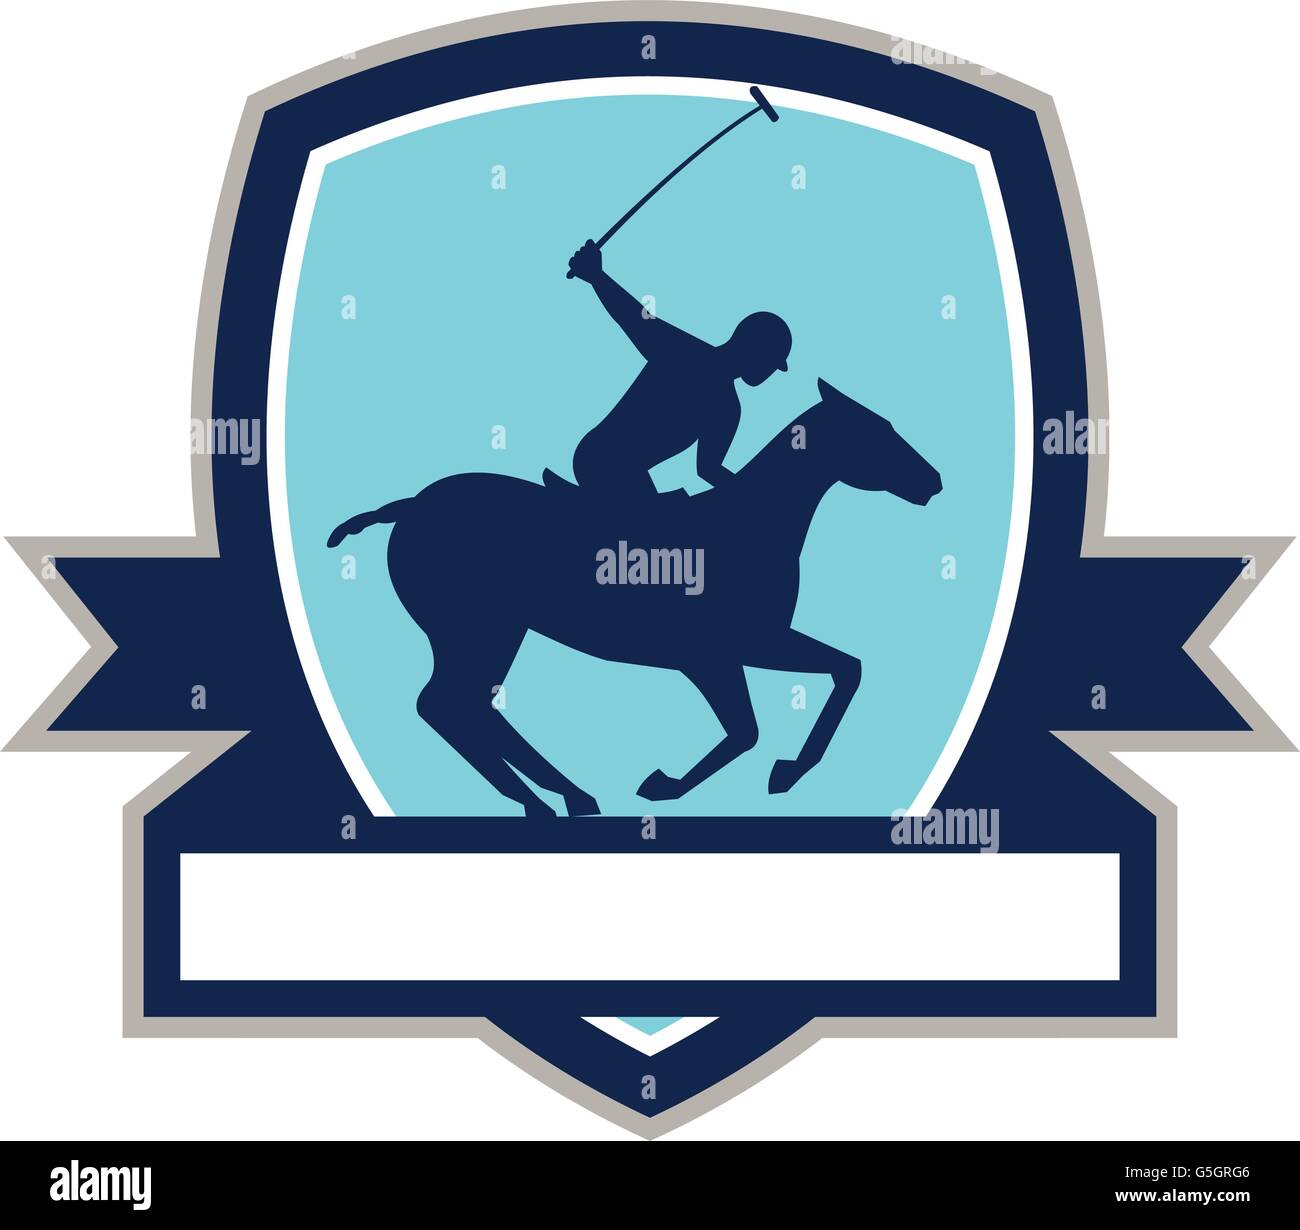 Illustration d'un joueur de polo équitation cheval avec stick polo mallet vu du côté situé à l'intérieur de la crête du bouclier avec ruban sur fond isolé fait dans le style rétro Illustration de Vecteur